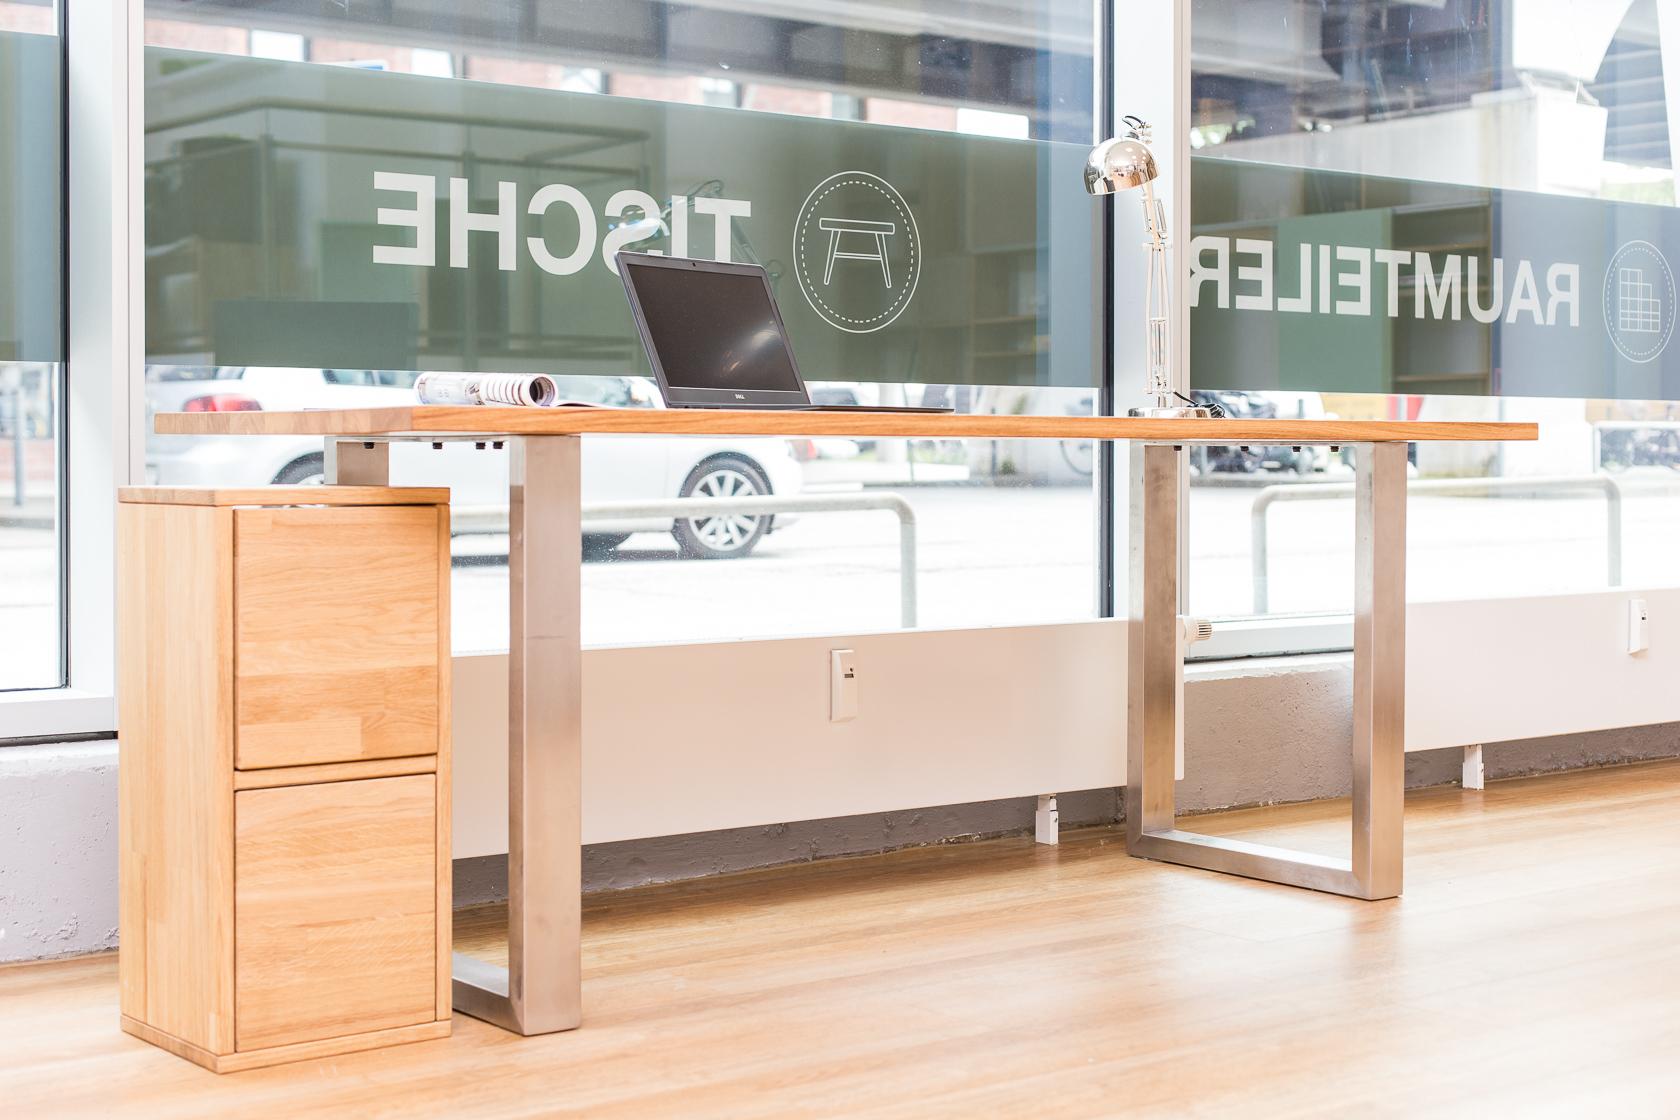 Stilvoller Schreibtisch mit Edelstahl-Beinen #holztisch #schreibtisch #massivholztisch ©Pickawood GmbH